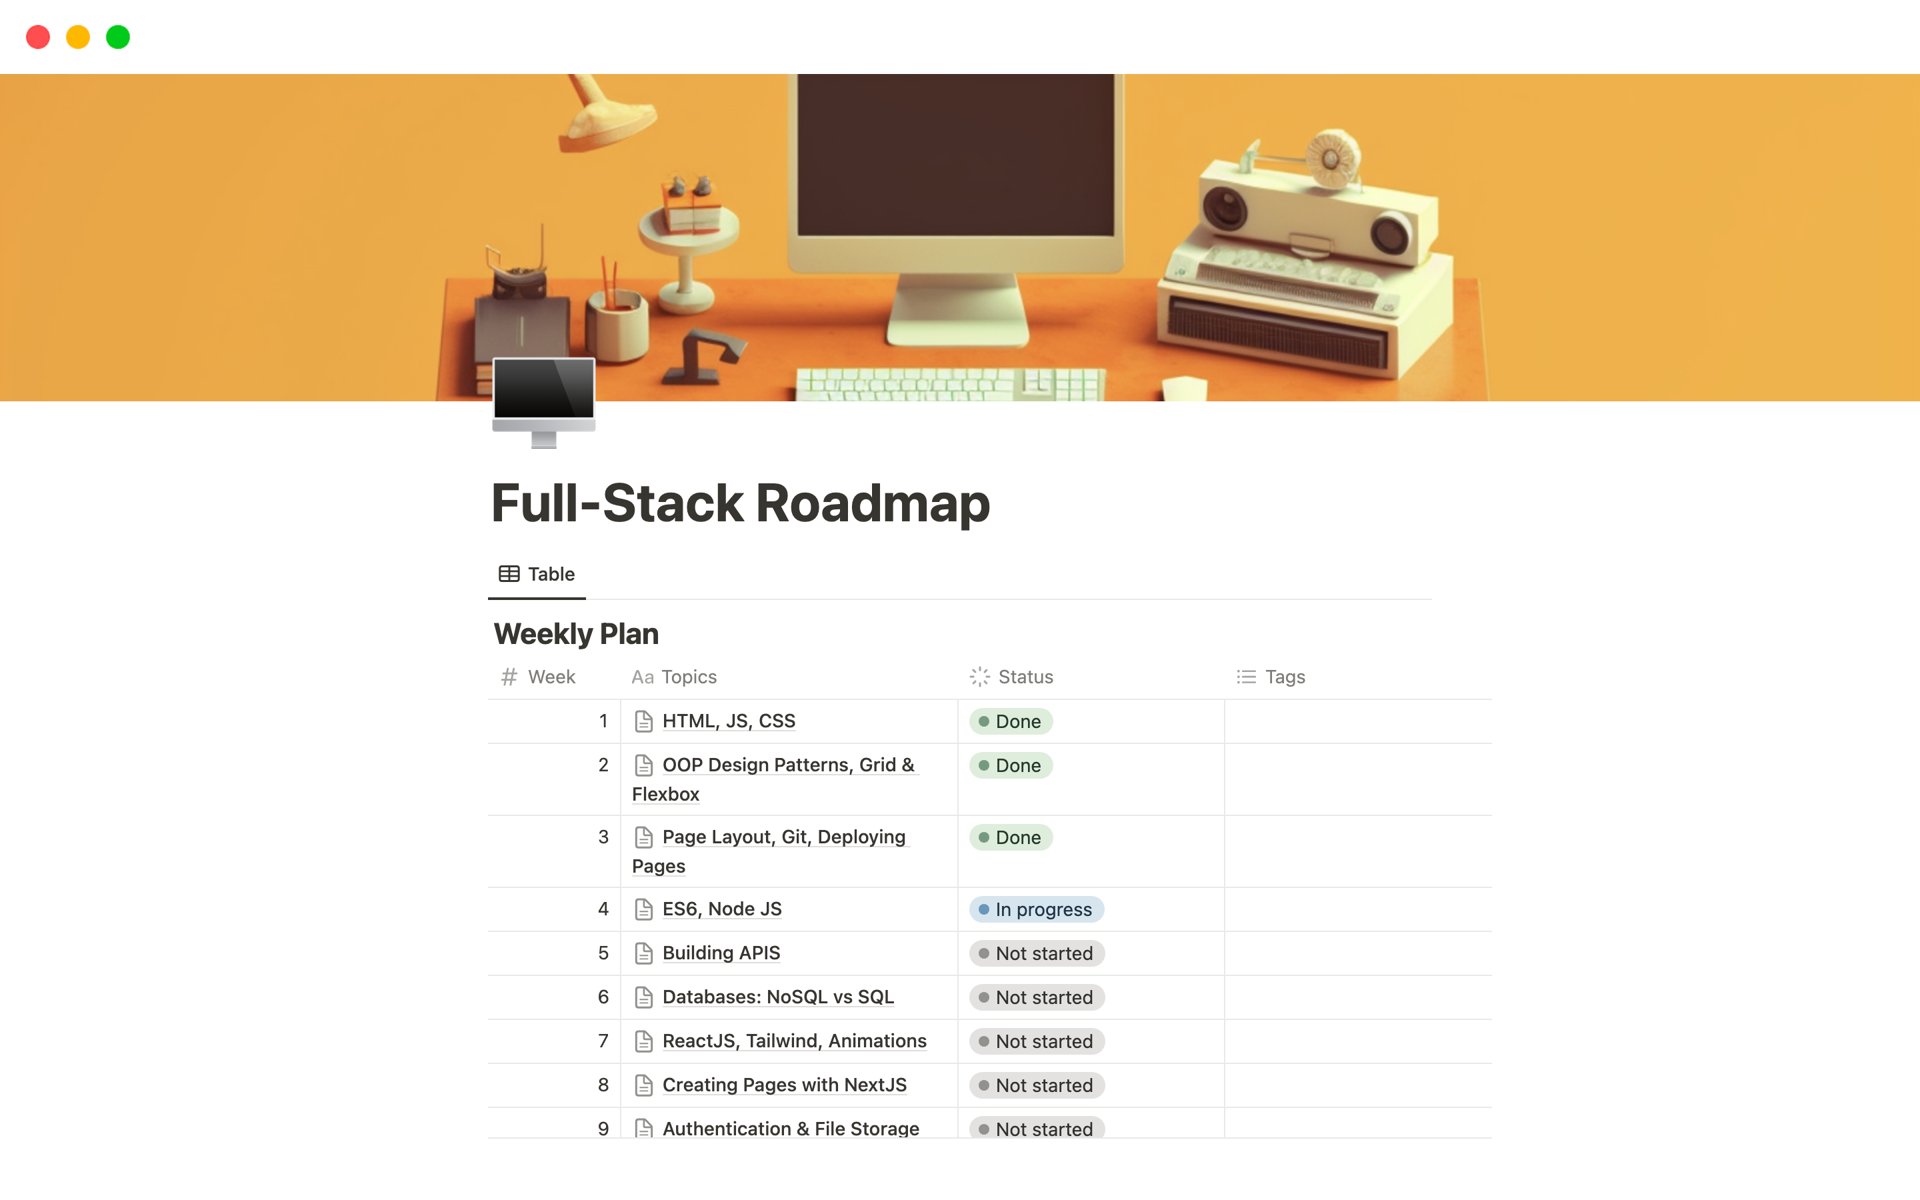 Aperçu du modèle de Full-Stack Roadmap